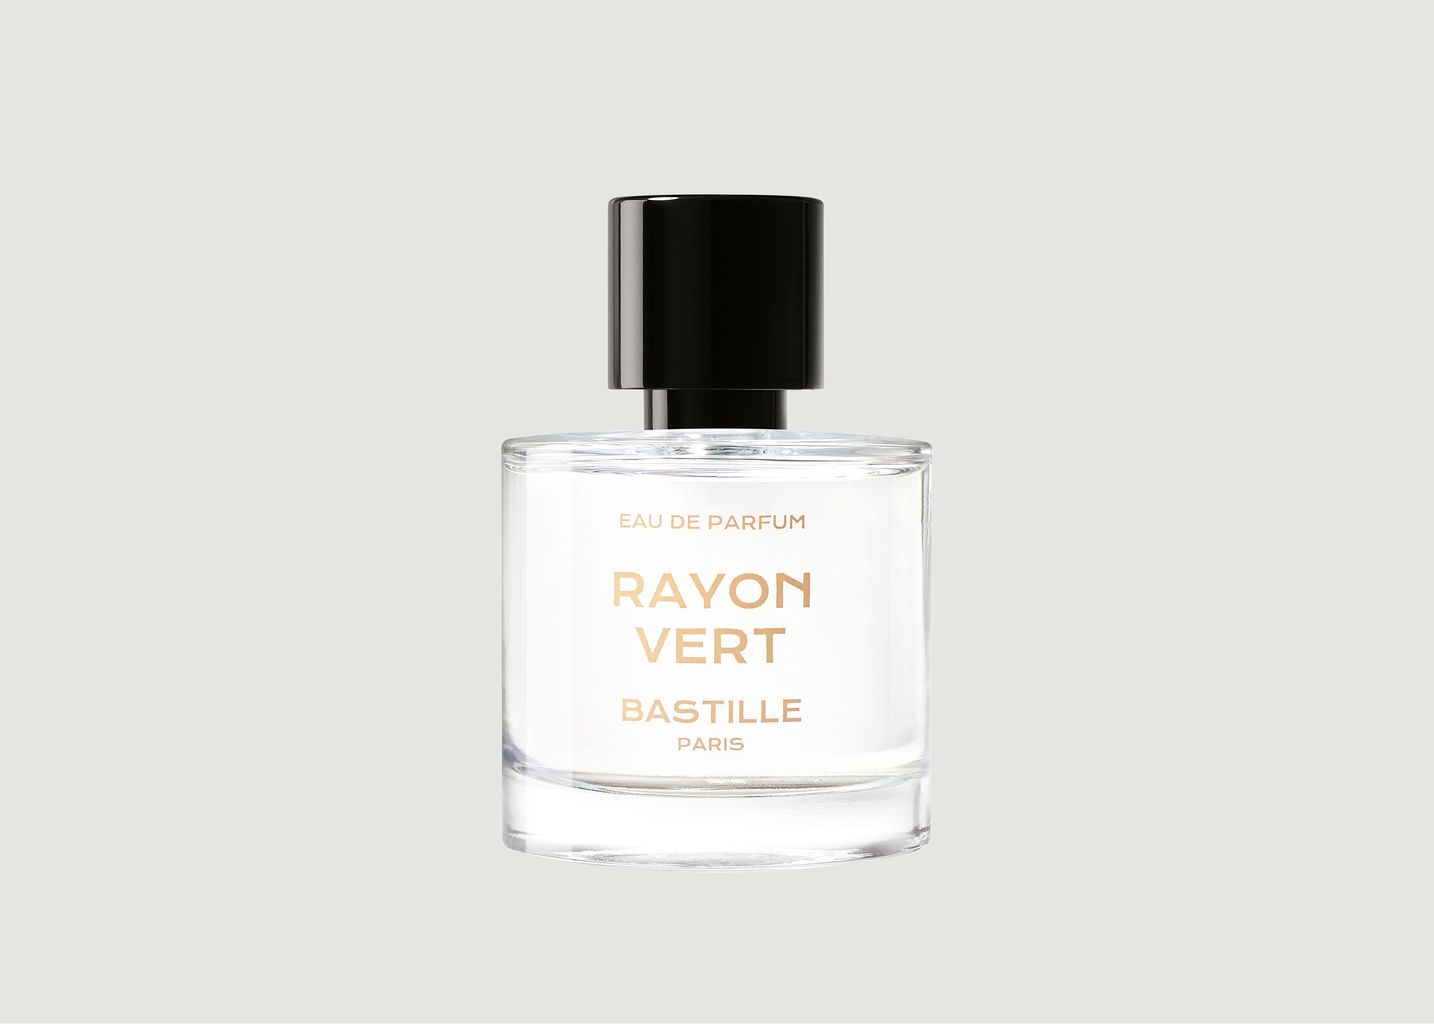 Eau de Parfum Rayon Vert 50 ml - Bastille Paris